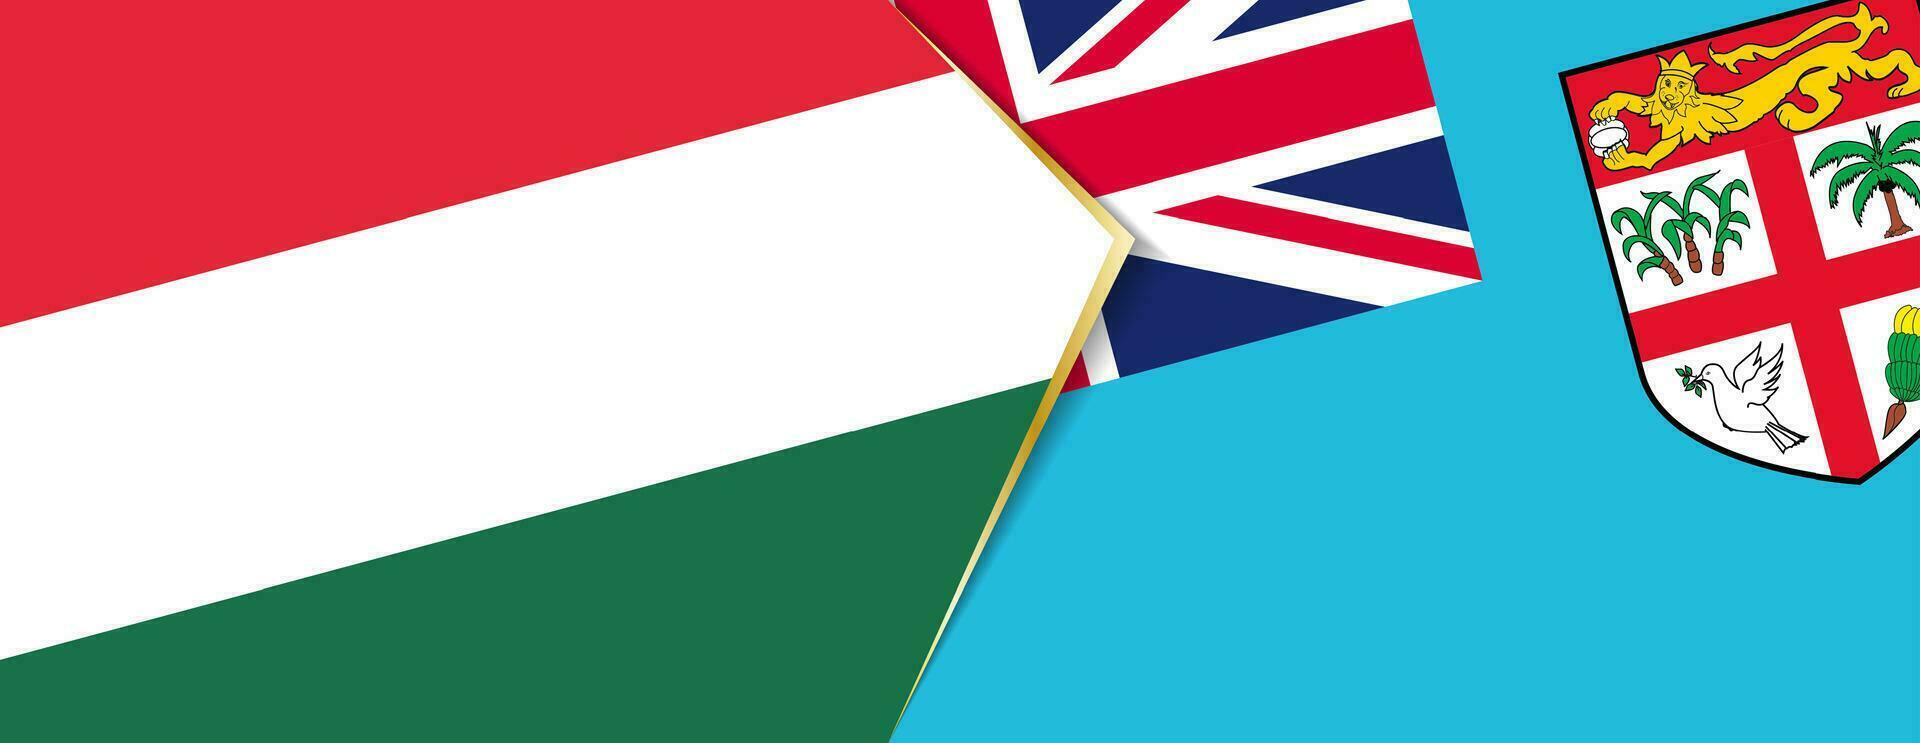 Hongarije en fiji vlaggen, twee vector vlaggen.